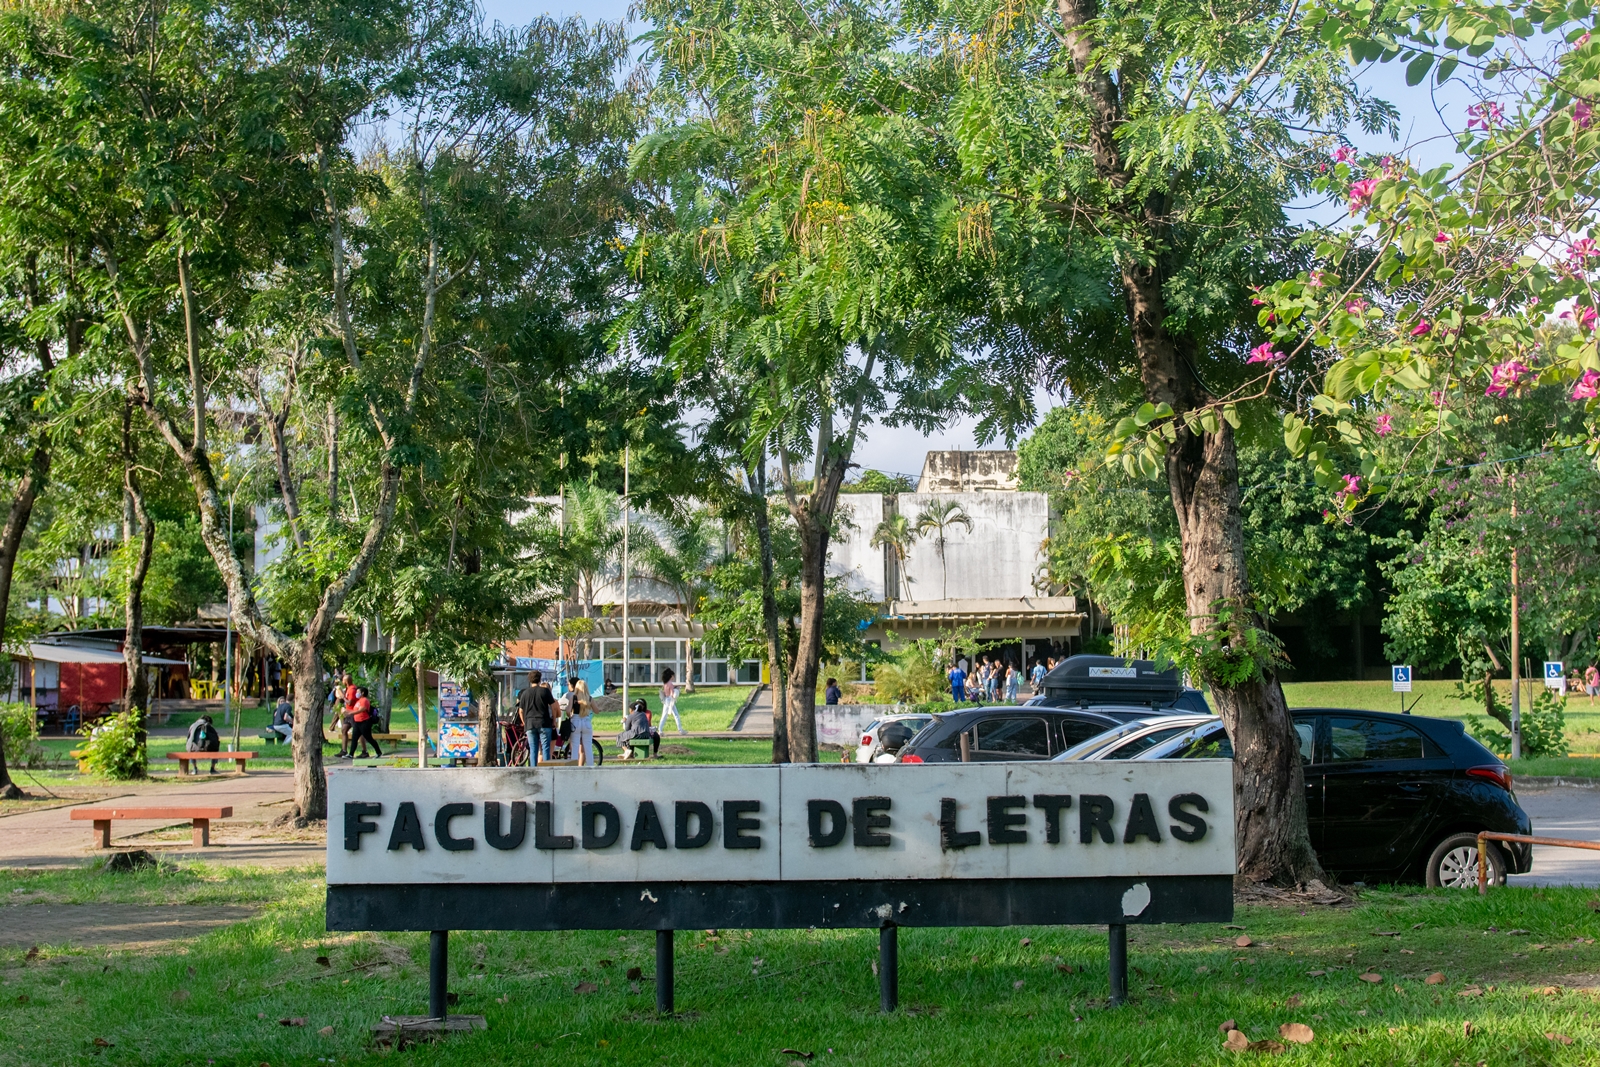 Fotografia apresenta o bosque de entrada da Faculdade de Letras, com árvores e alguns carros ao fundo.